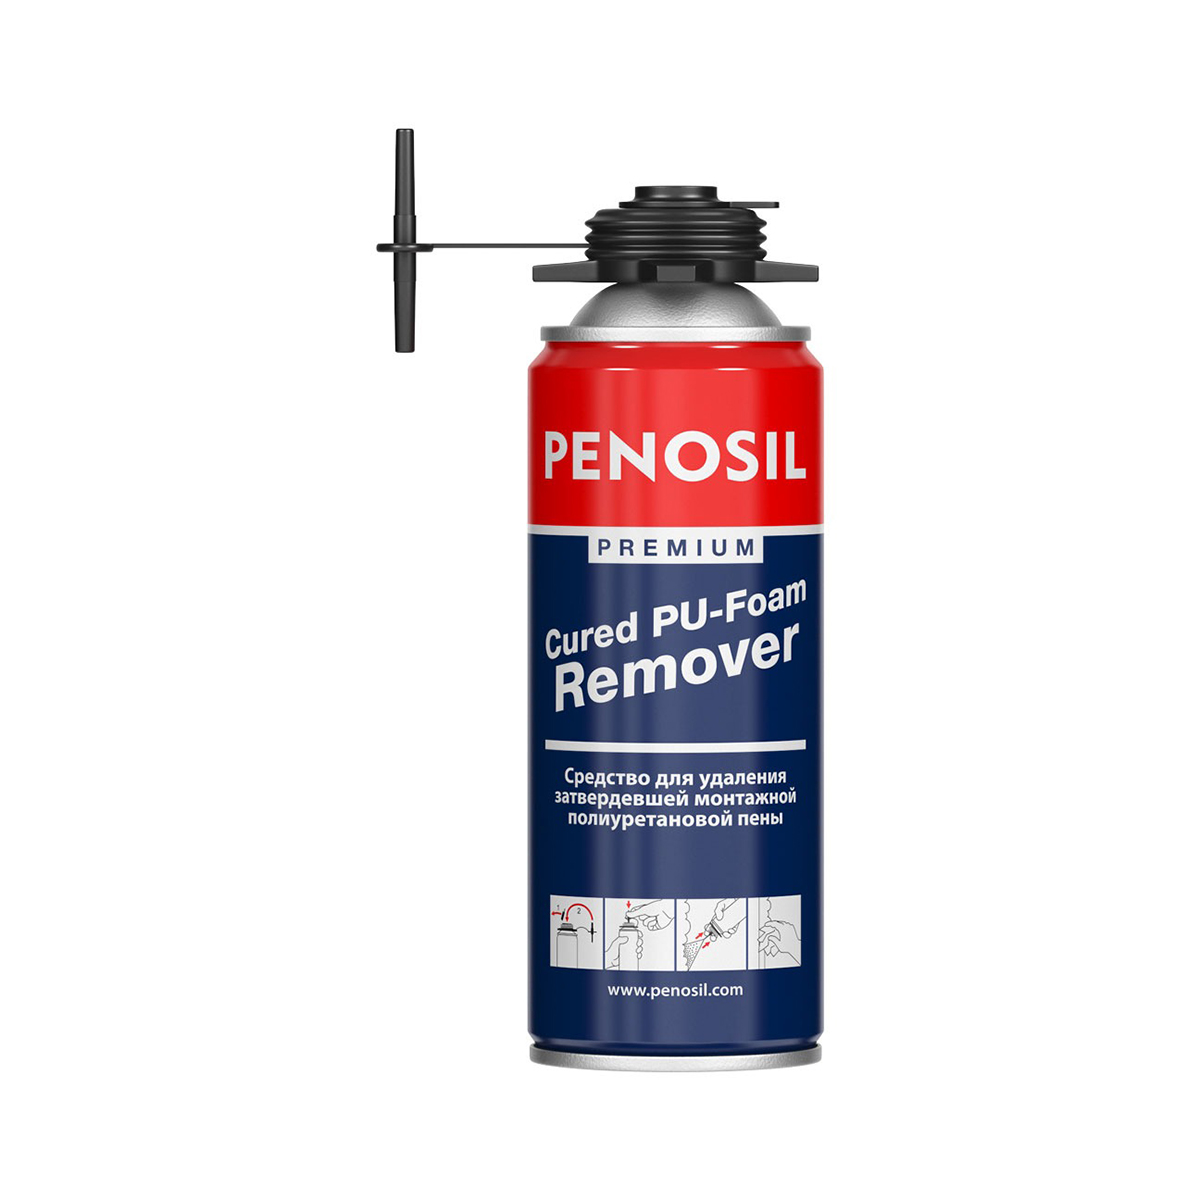 Очиститель застывшей монтажной пены Penosil Premium Cured PU-Foam Remover, 340 мл очиститель монтажной пены kraftool